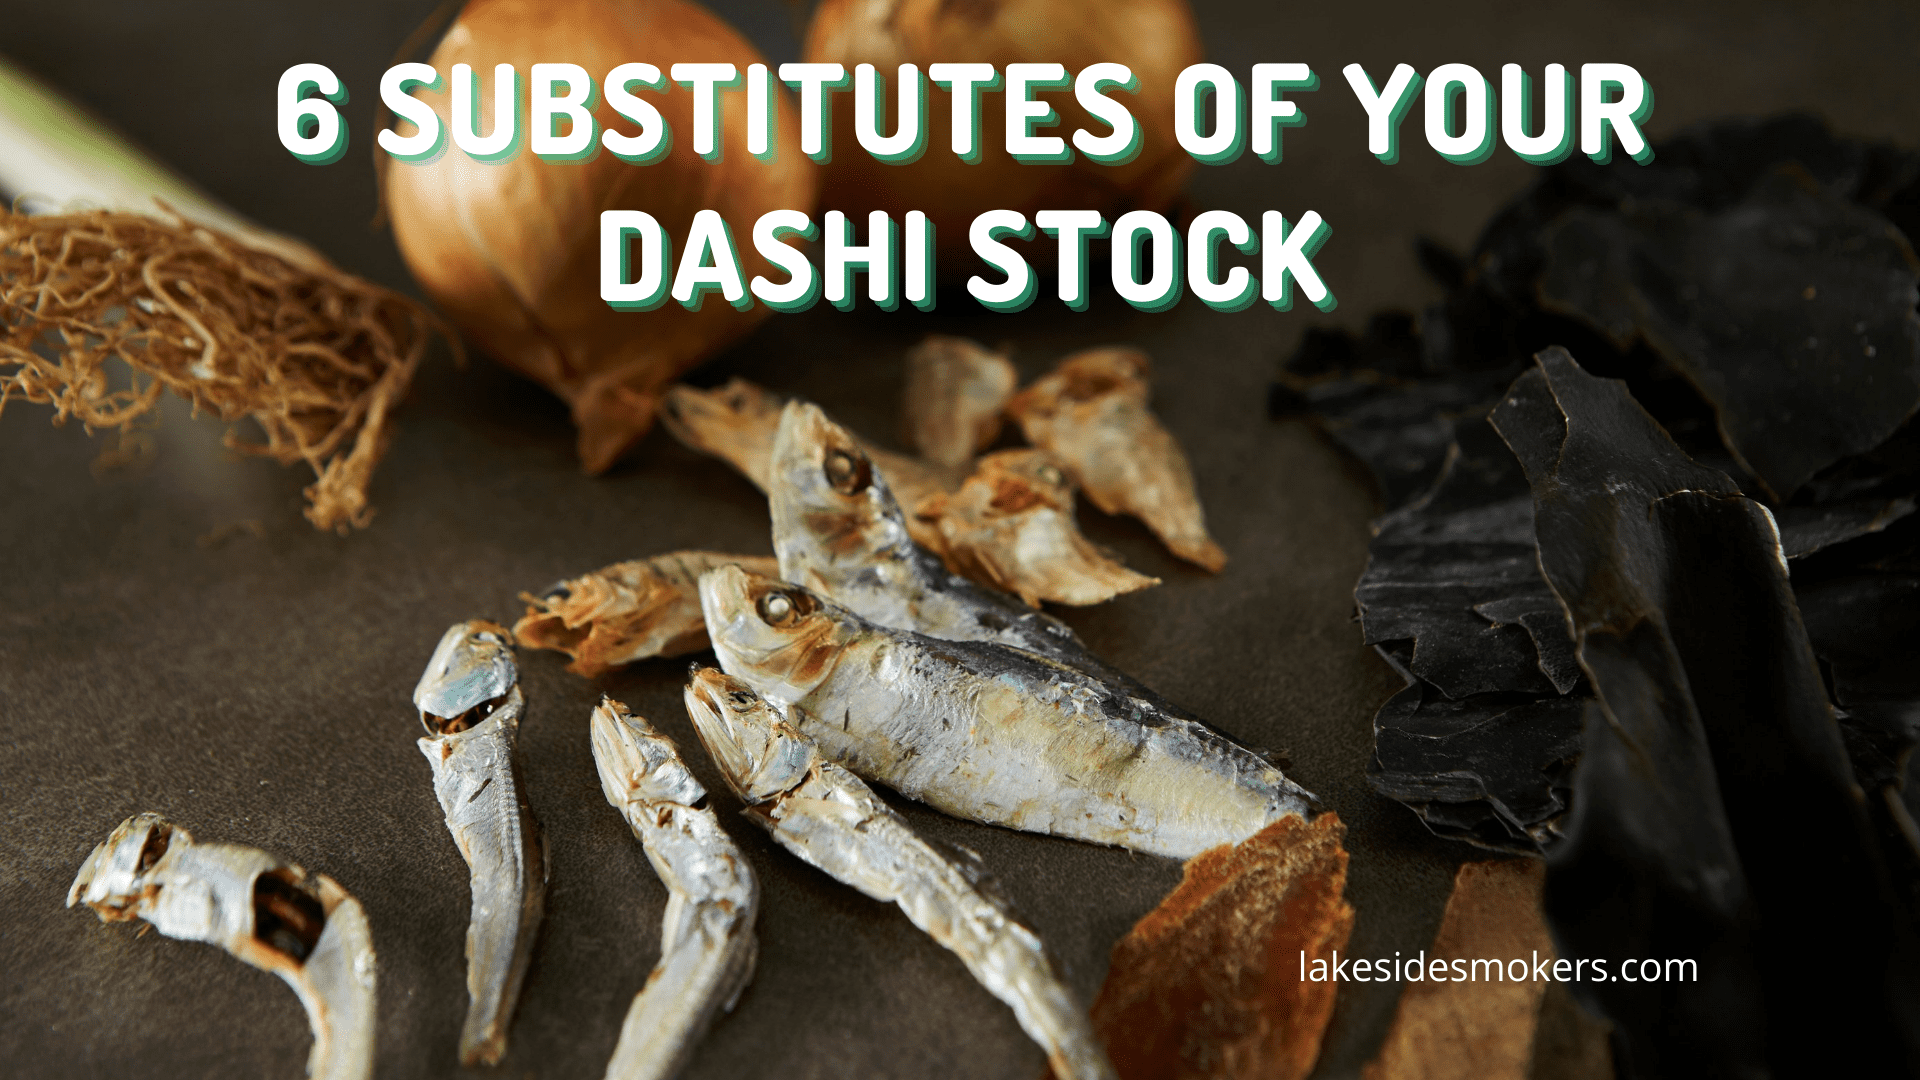 ¿No tienes stock de dashi? ¡Utilice estos 6 sustitutos secretos en su lugar!